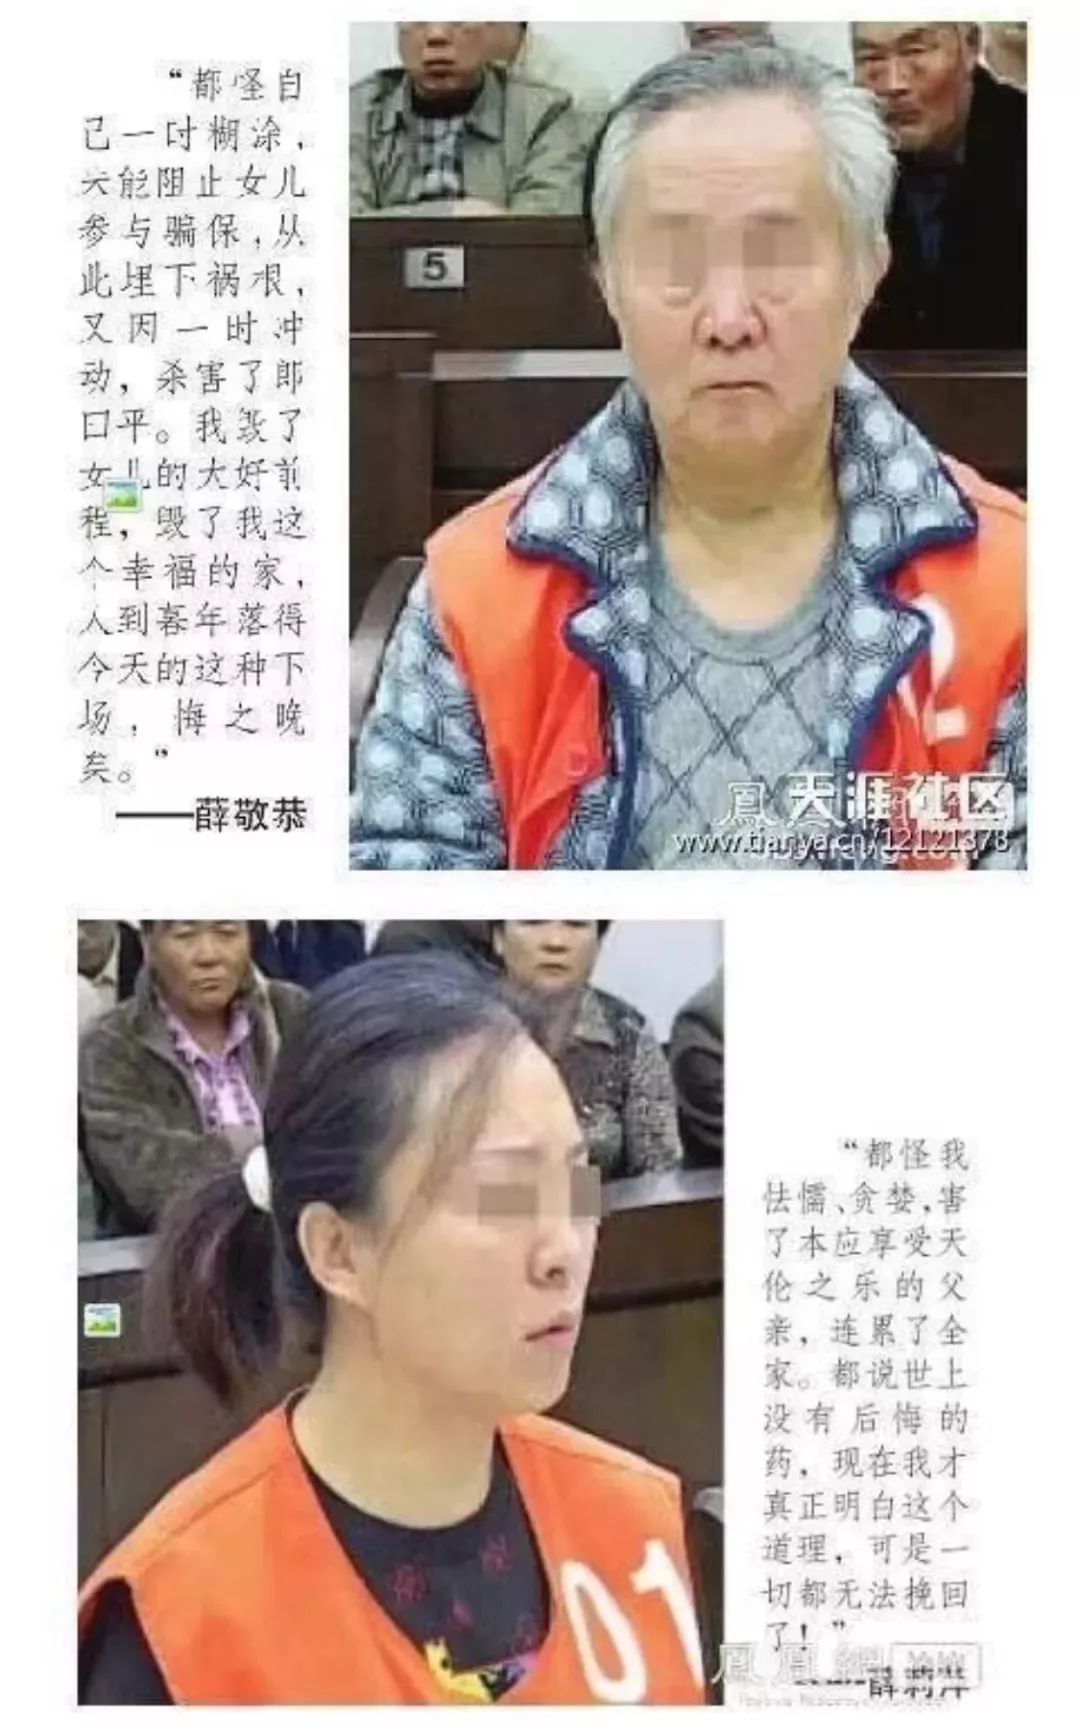 这起震惊南京的杀人案发生在2011年,南京中院在2013年对被涉案的被告